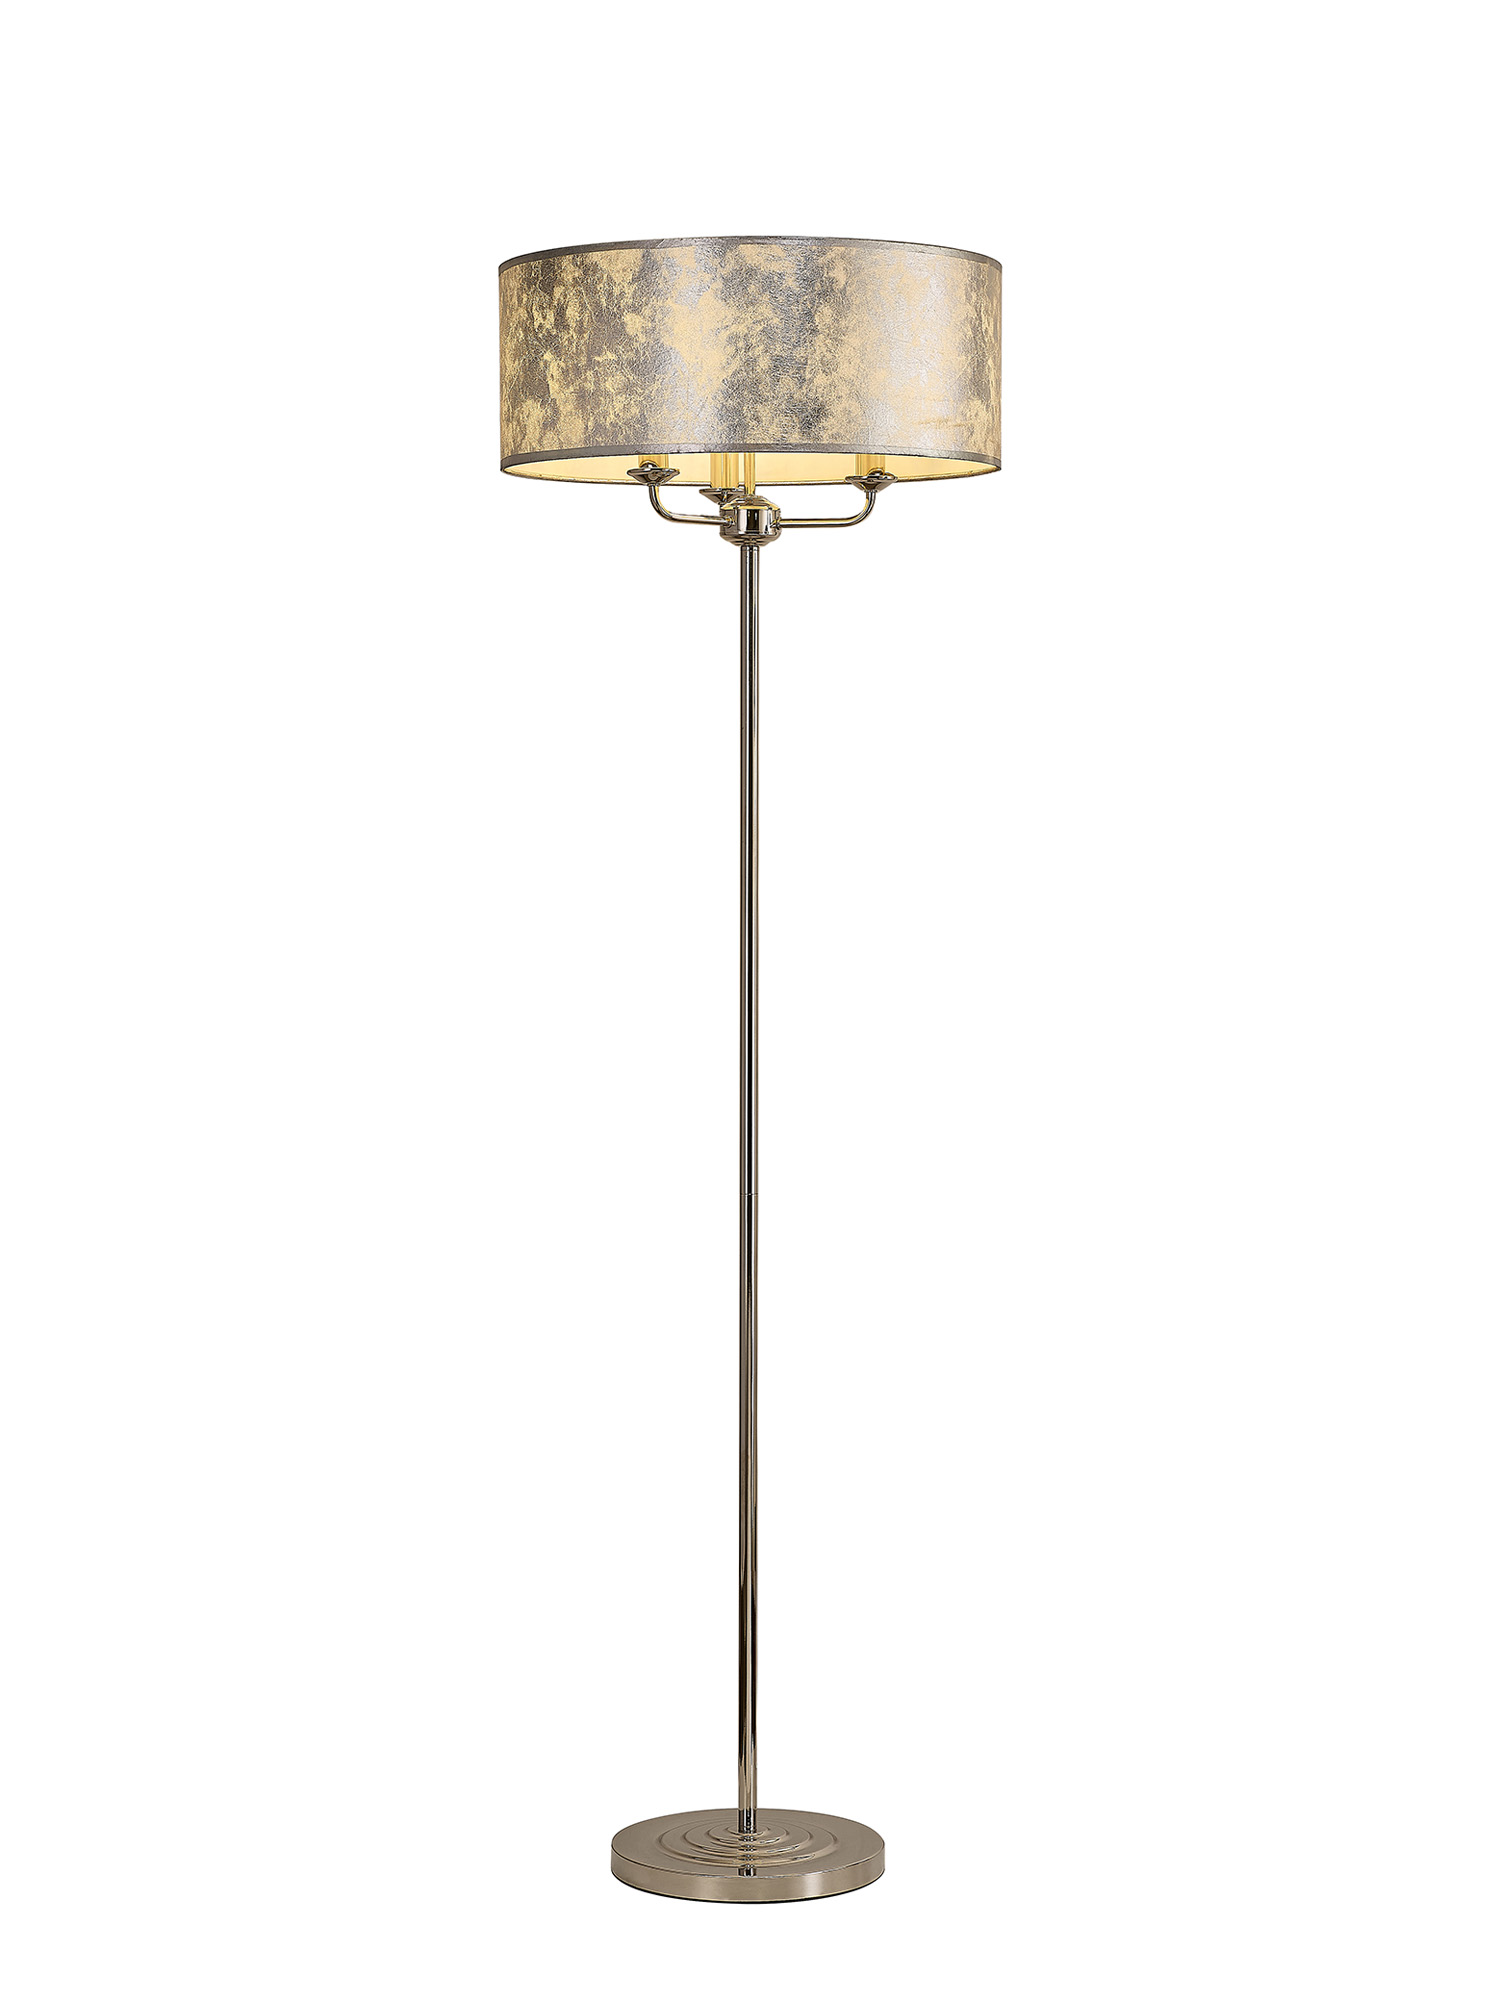 DK0900  Banyan 45cm 3 Light Floor Lamp Polished Nickel; Silver Leaf